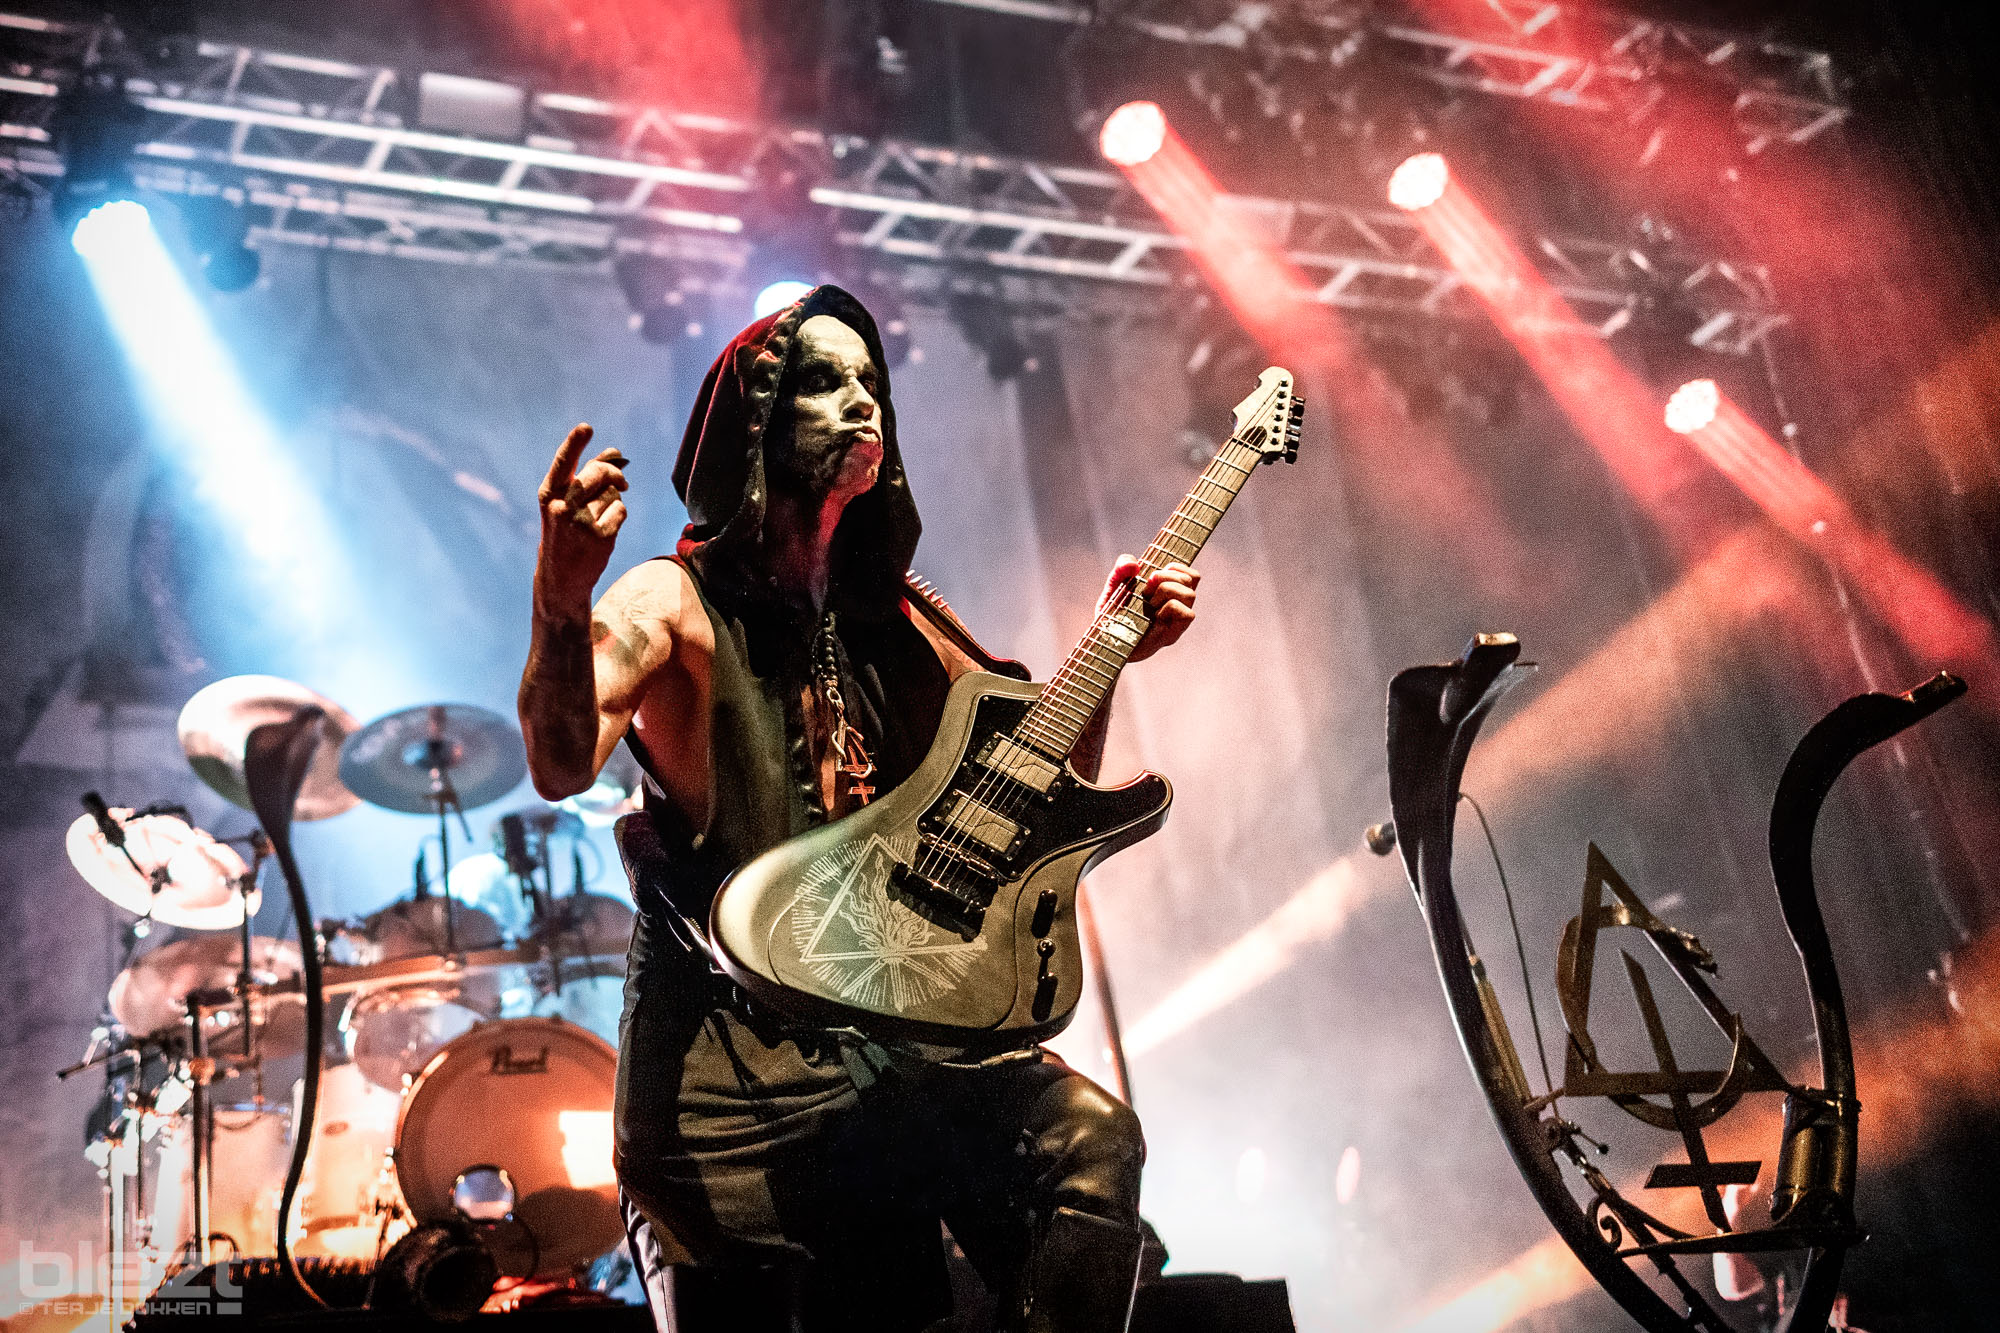 Behemoth live på Sentrum Scene November 2022 - BLEZT